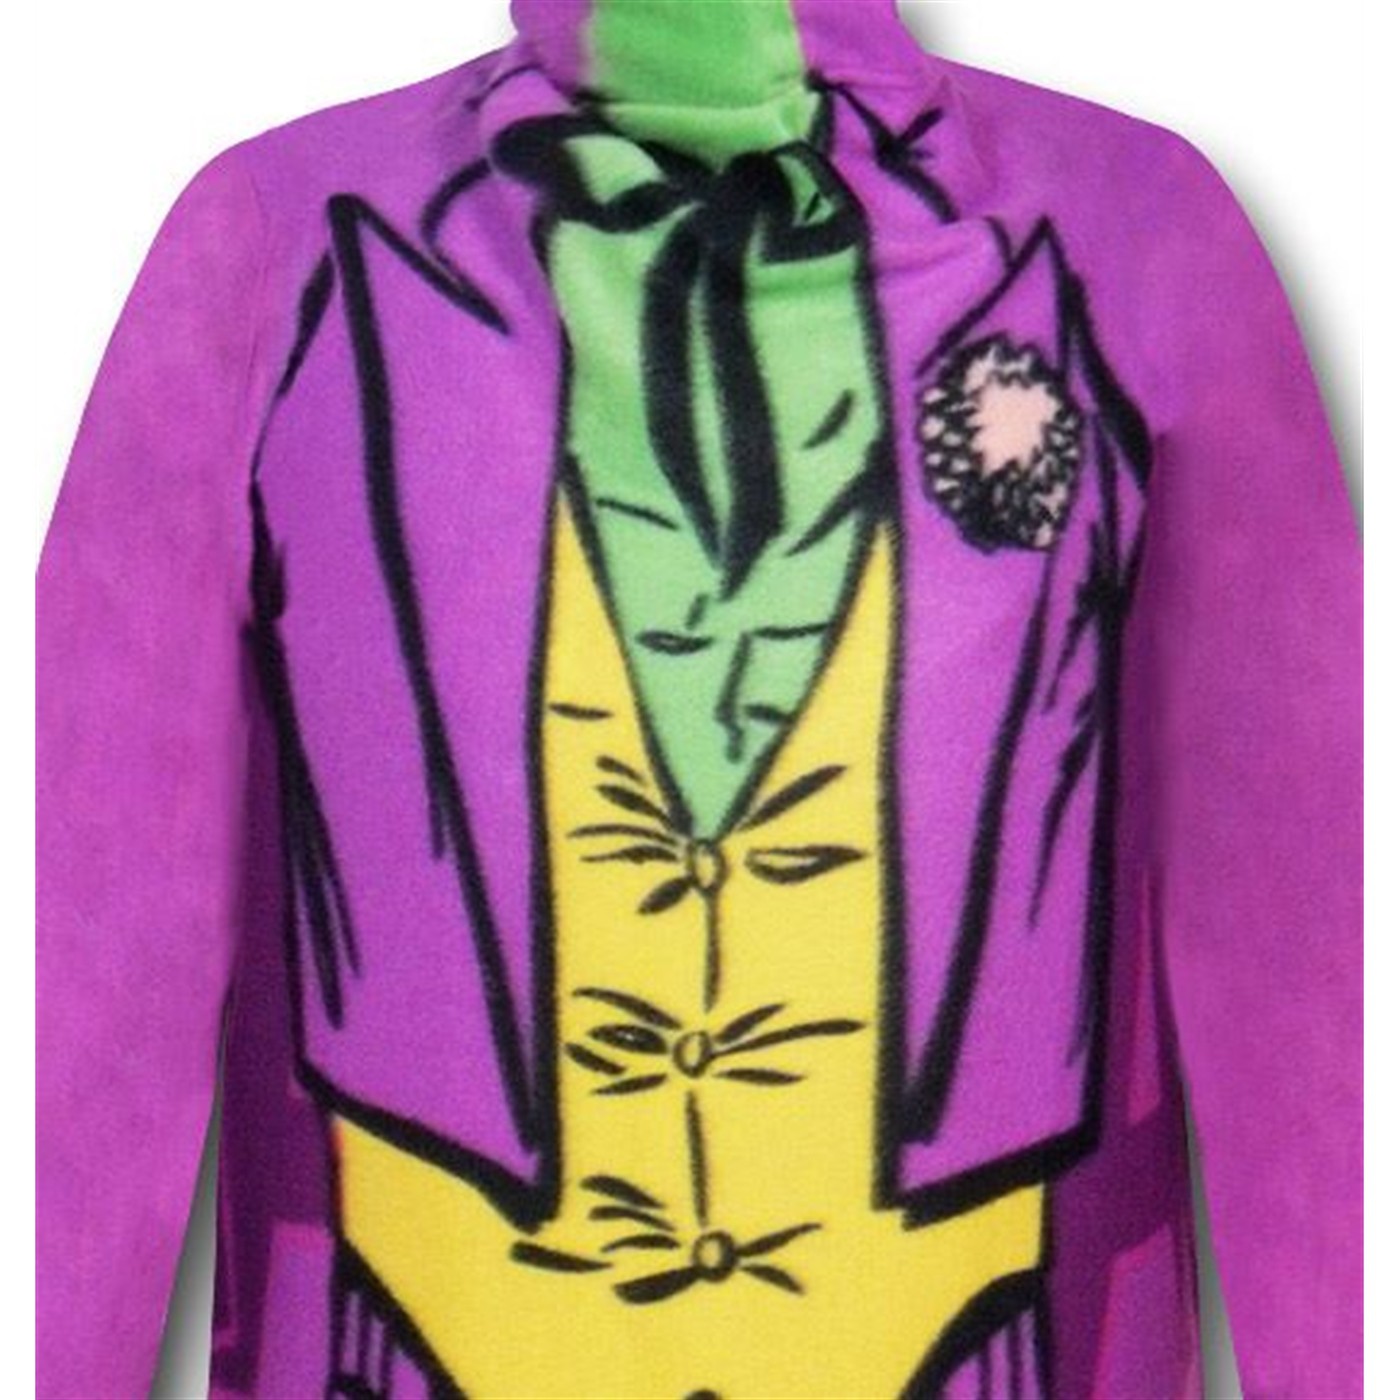 Joker Costume Snuggly Sleeved Blanket